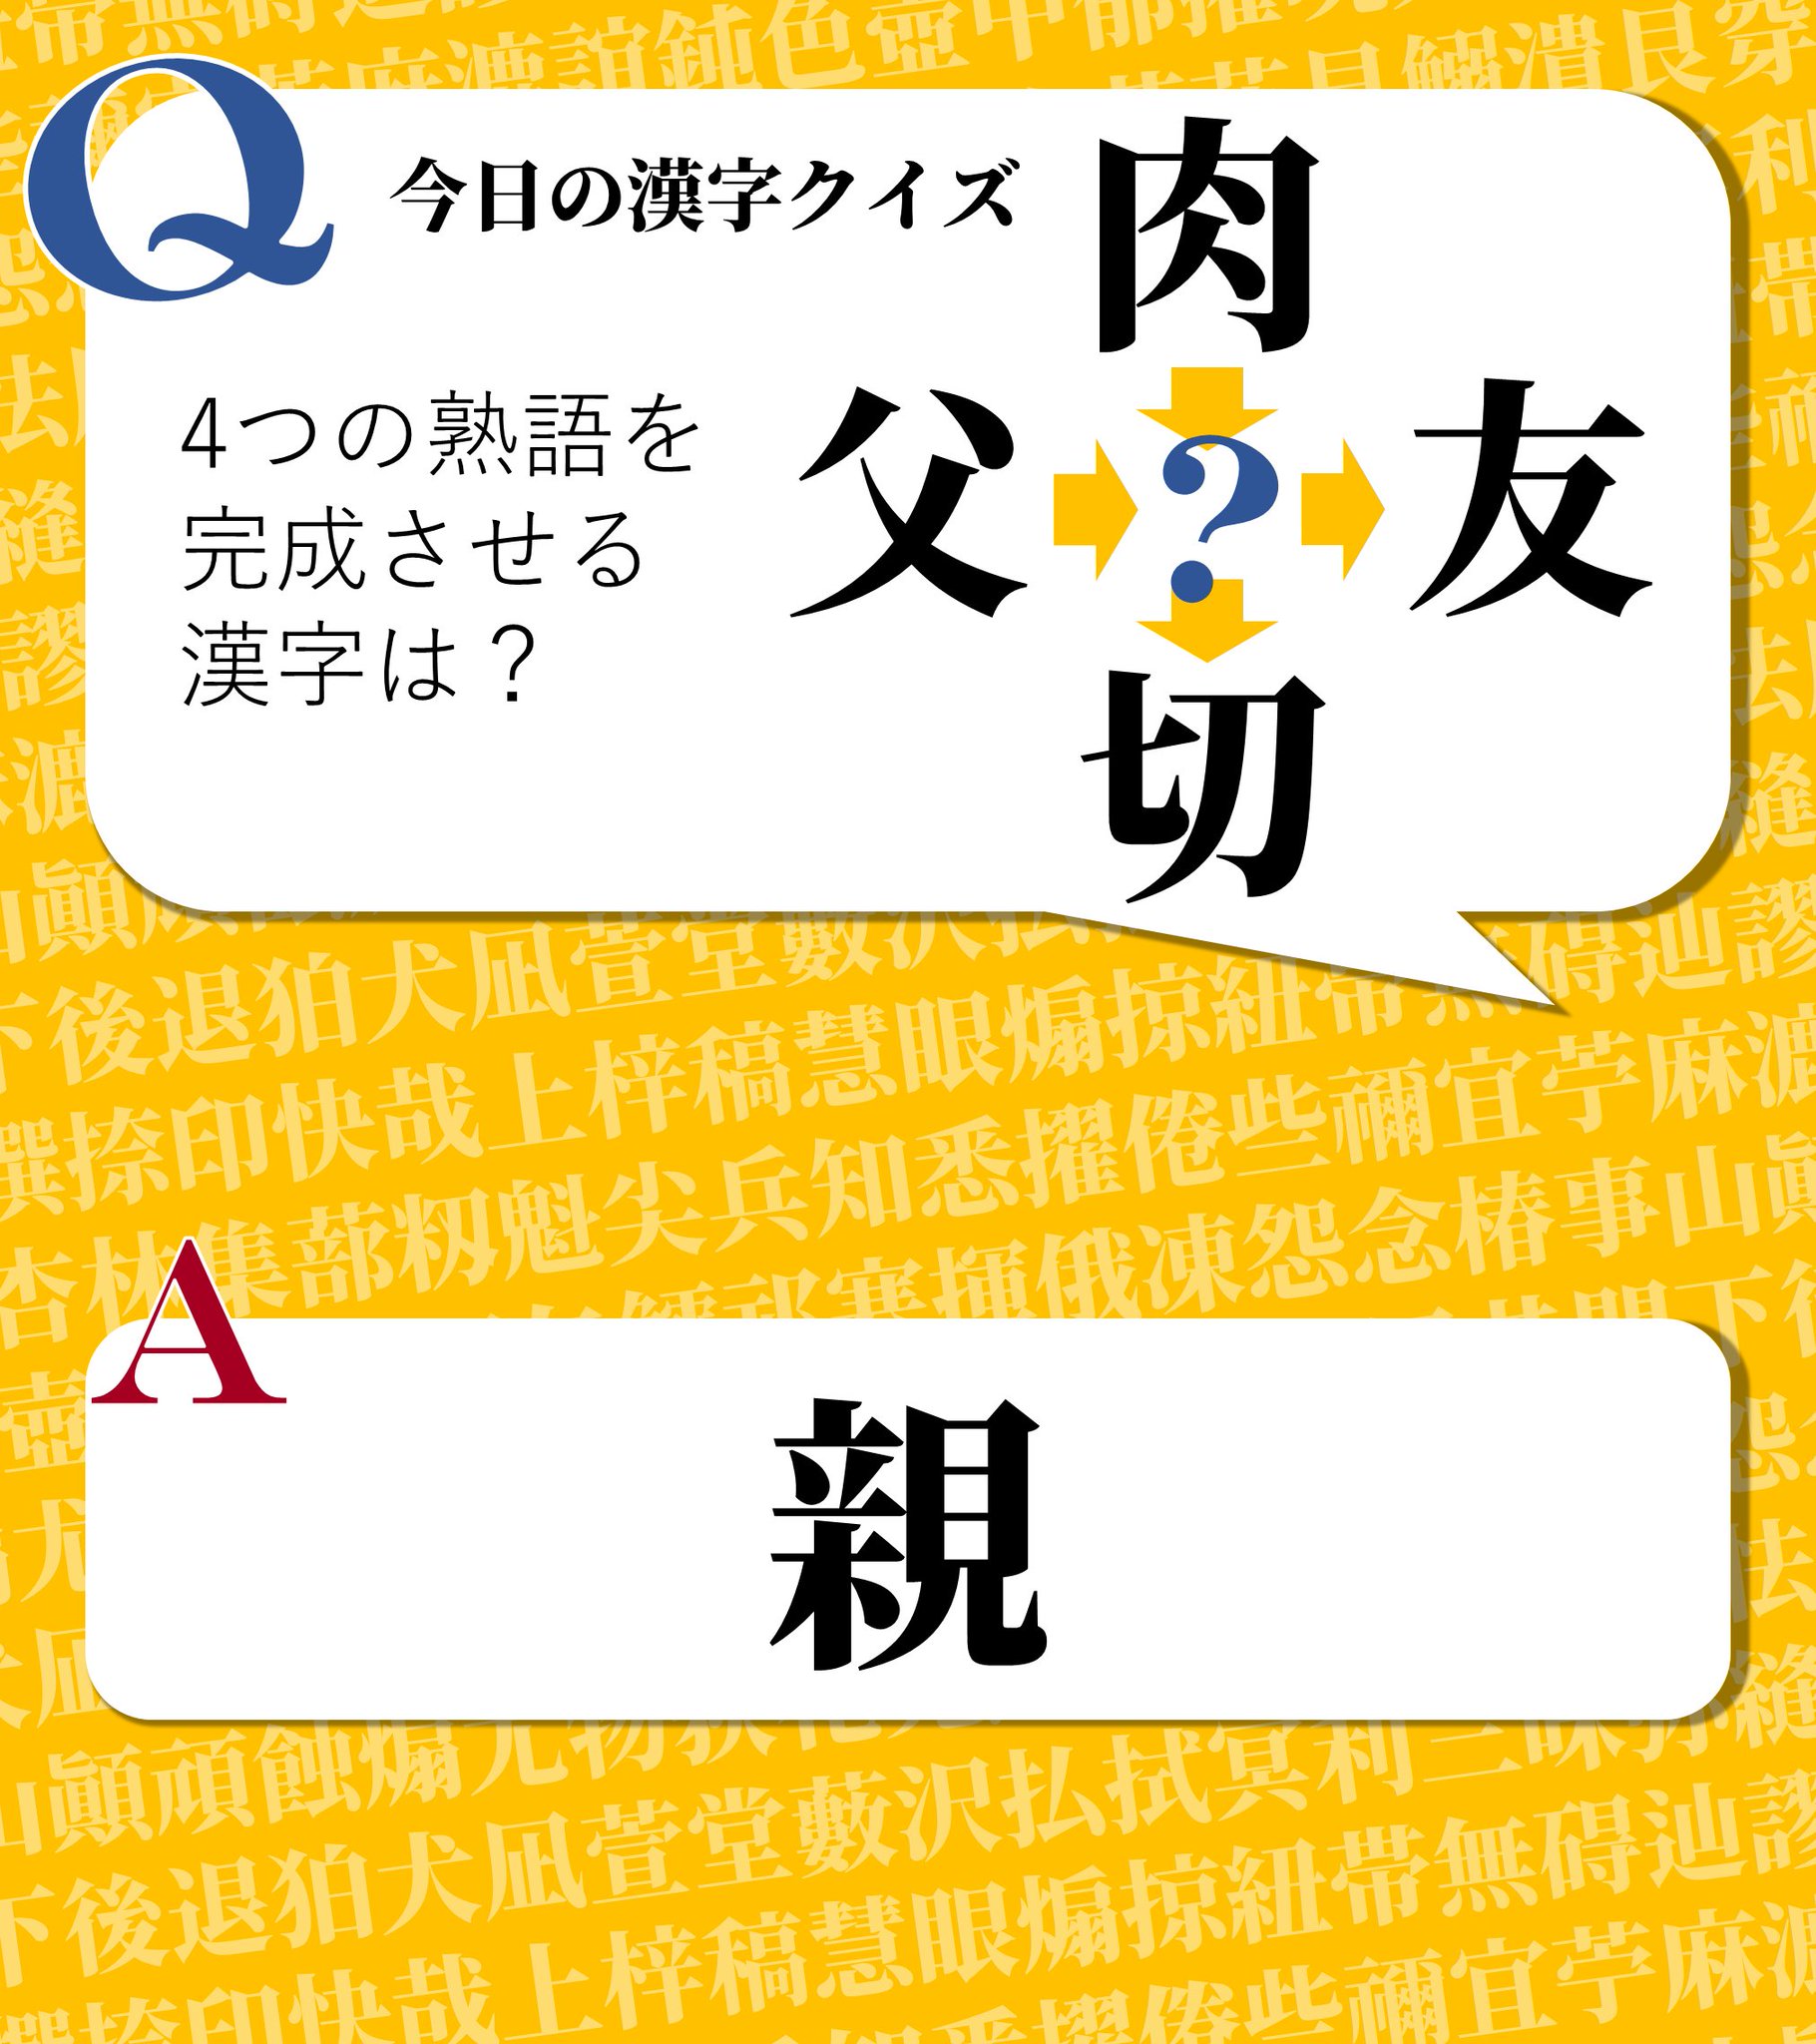 今日の漢字クイズ 今日の漢字クイズ 4つの熟語を完成させる 共通の一字は 肉 父 切 友 答えは画像をクリック 漢字 漢字クイズ 虫食い漢字